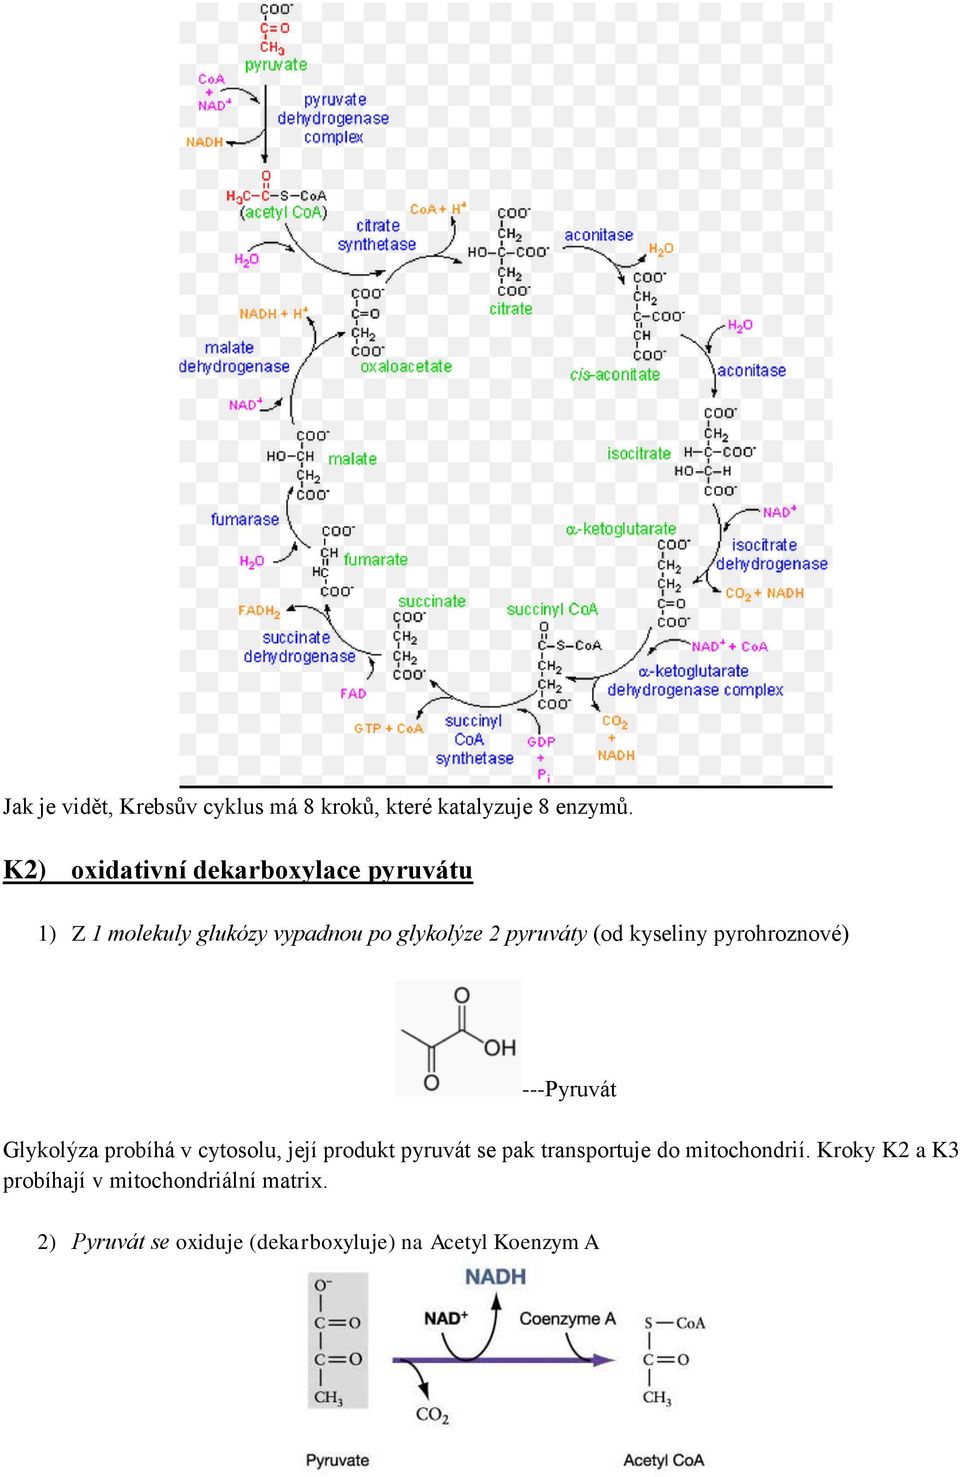 kyseliny pyrohroznové) ---Pyruvát Glykolýza probíhá v cytosolu, její produkt pyruvát se pak